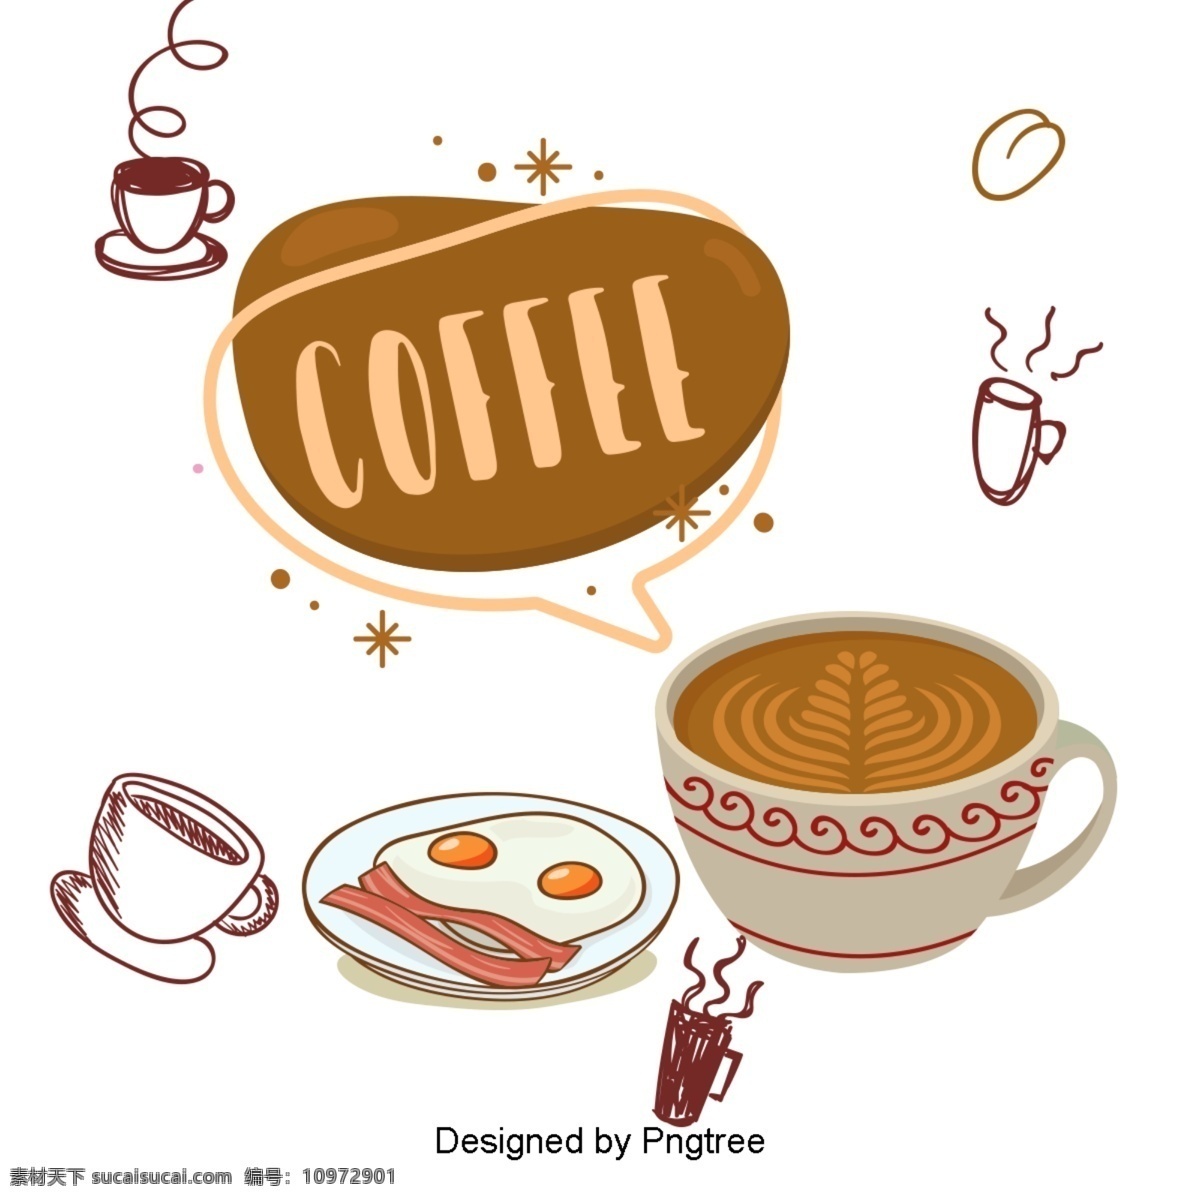 漂亮 的卡 通 可爱 手绘 咖啡 食品饮料 甜点 审美 卡通 创意 美味 咖啡杯 饮料 休闲